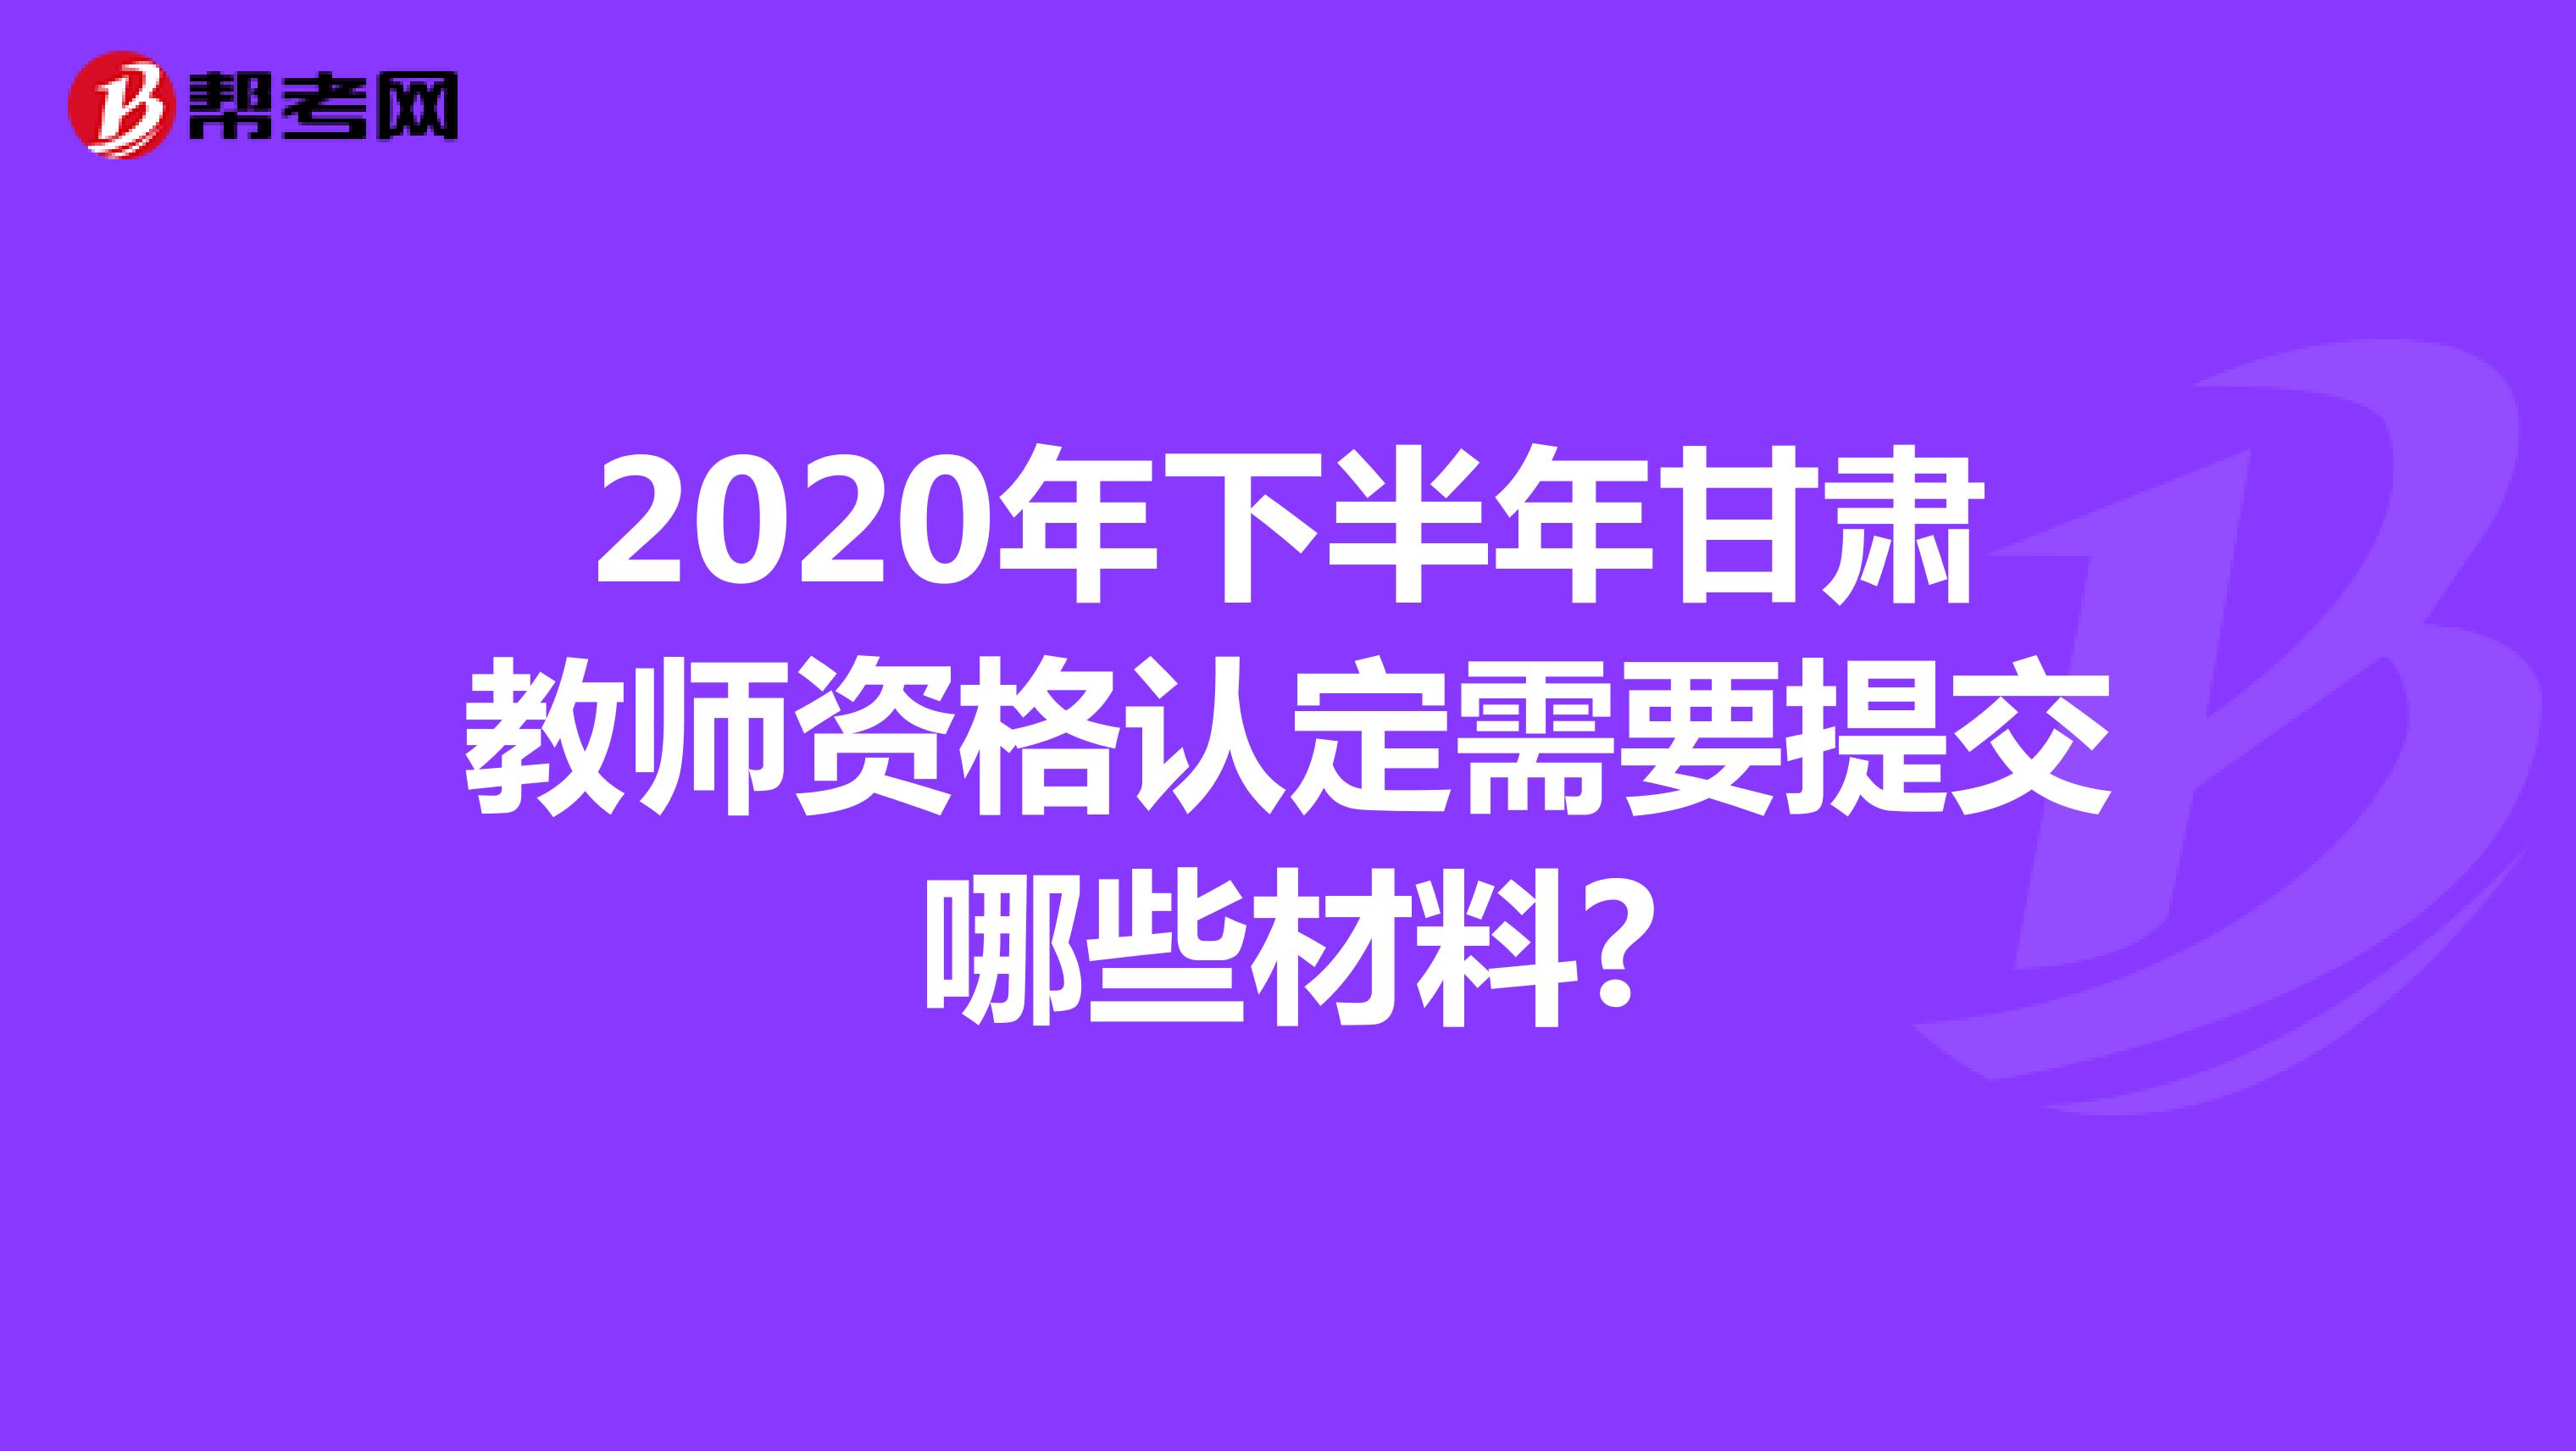 2020年下半年甘肃教师资格认定需要提交哪些材料?